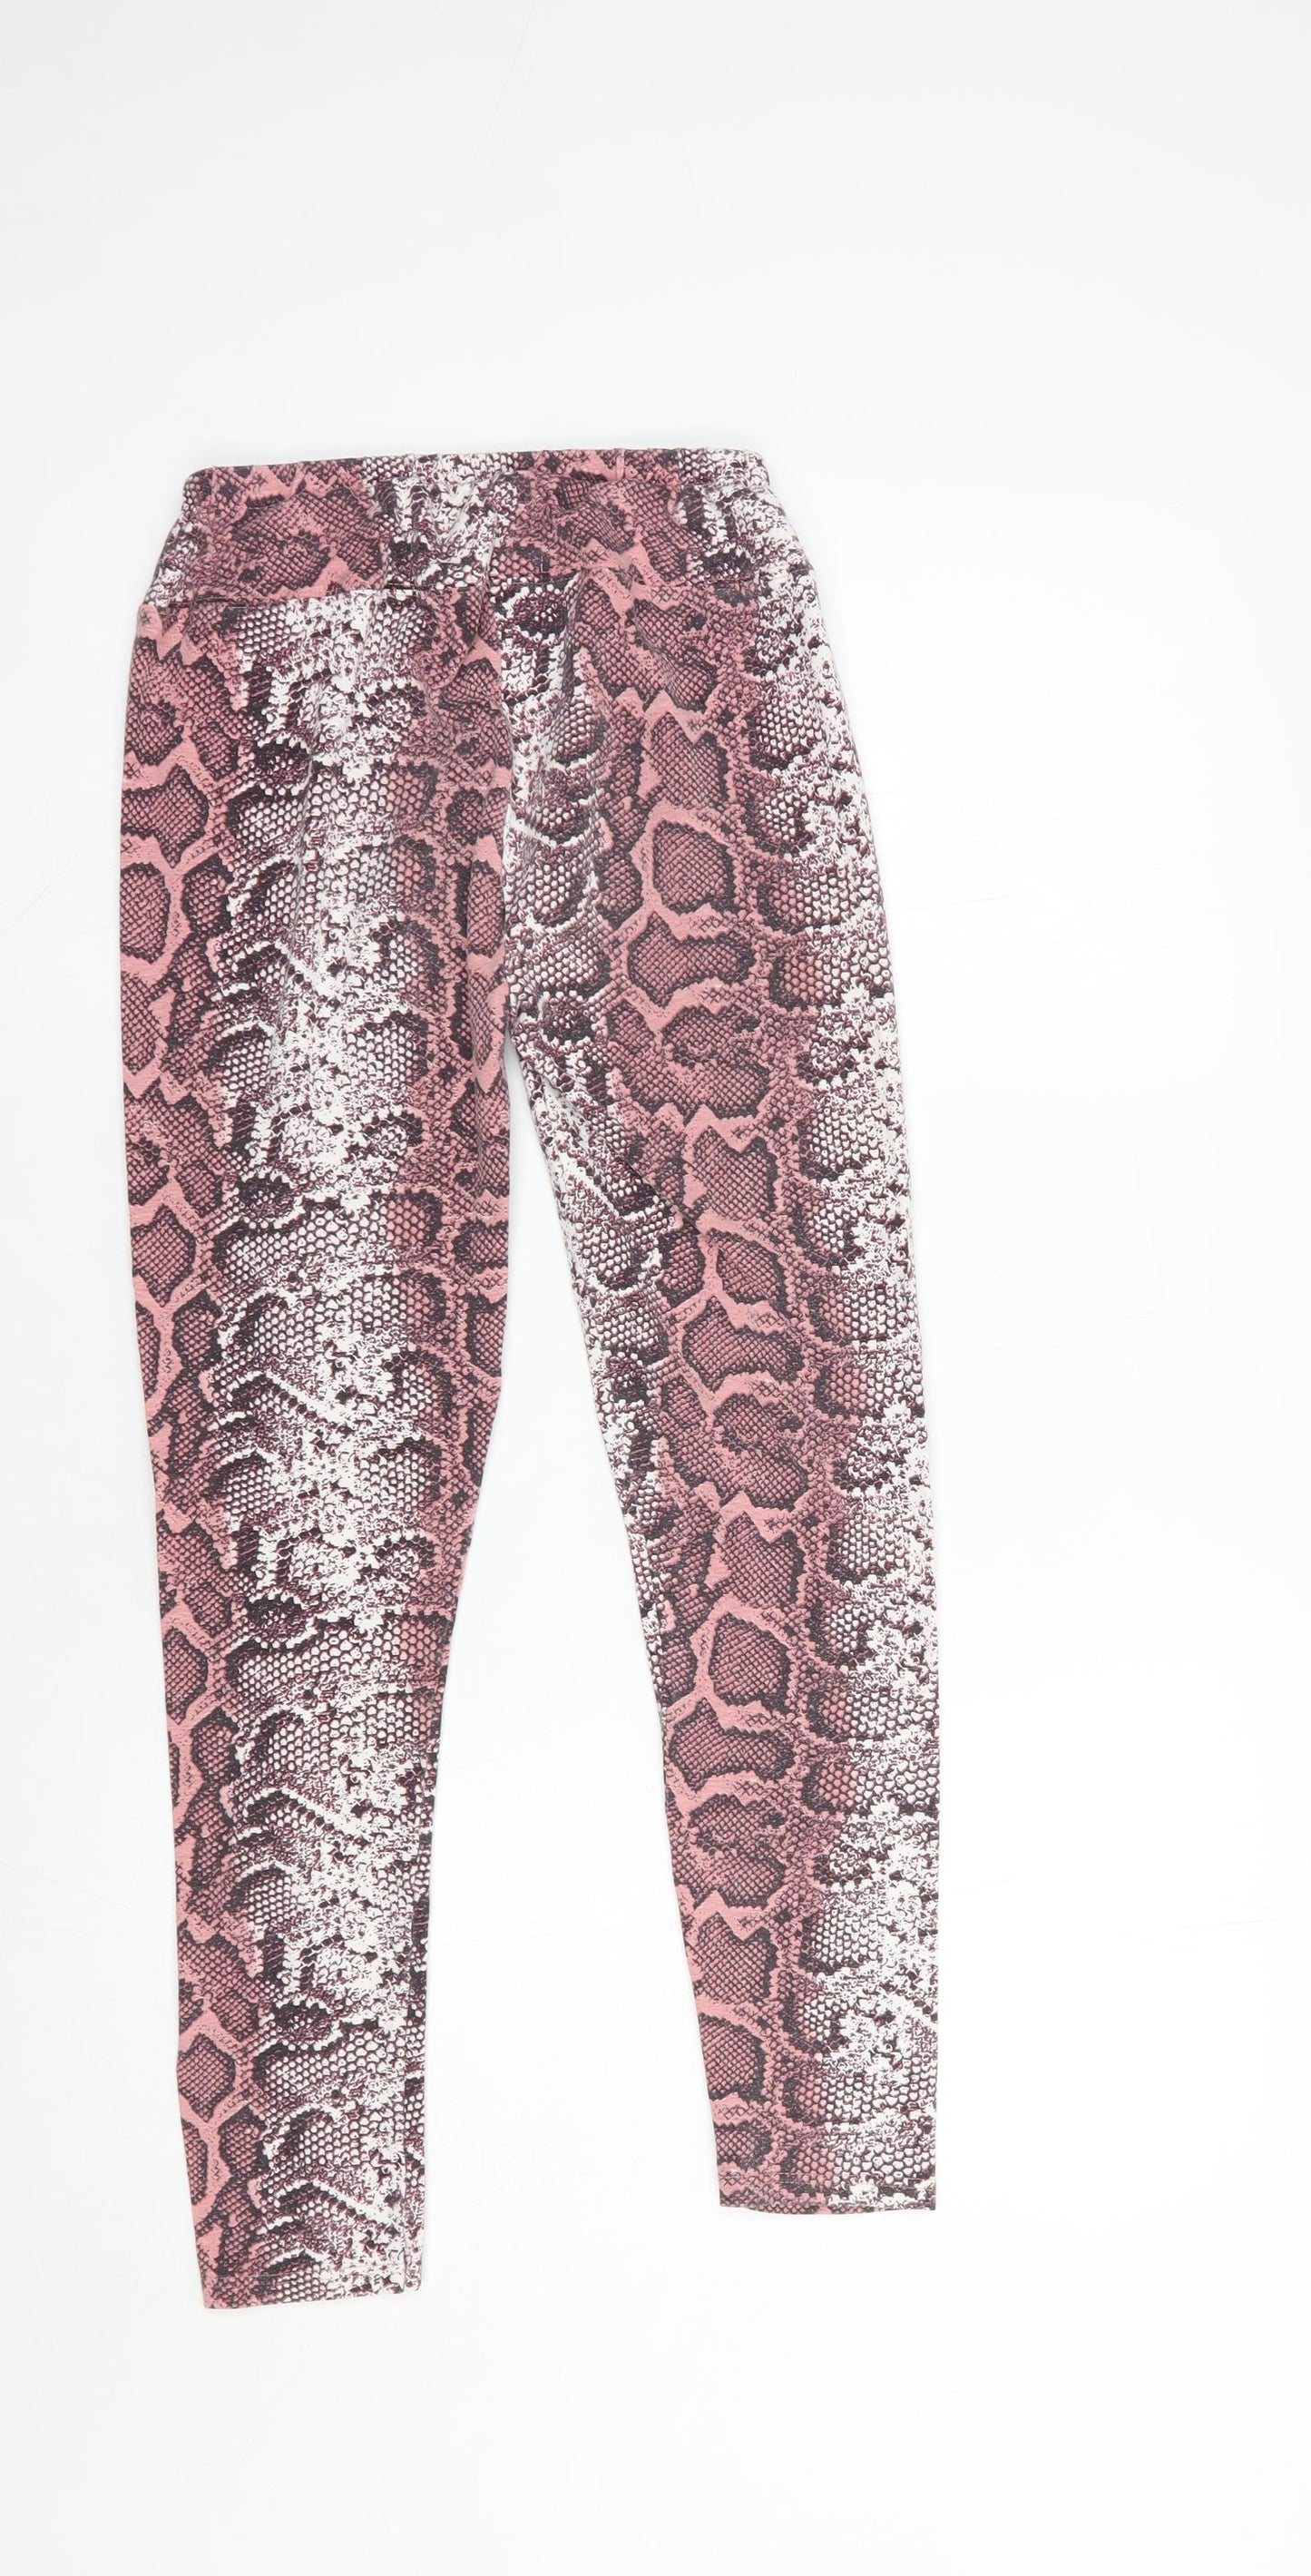 Studio Girls Pink Animal Print Cotton Jogger Trousers Size 14 Years  Regular  - Leggings